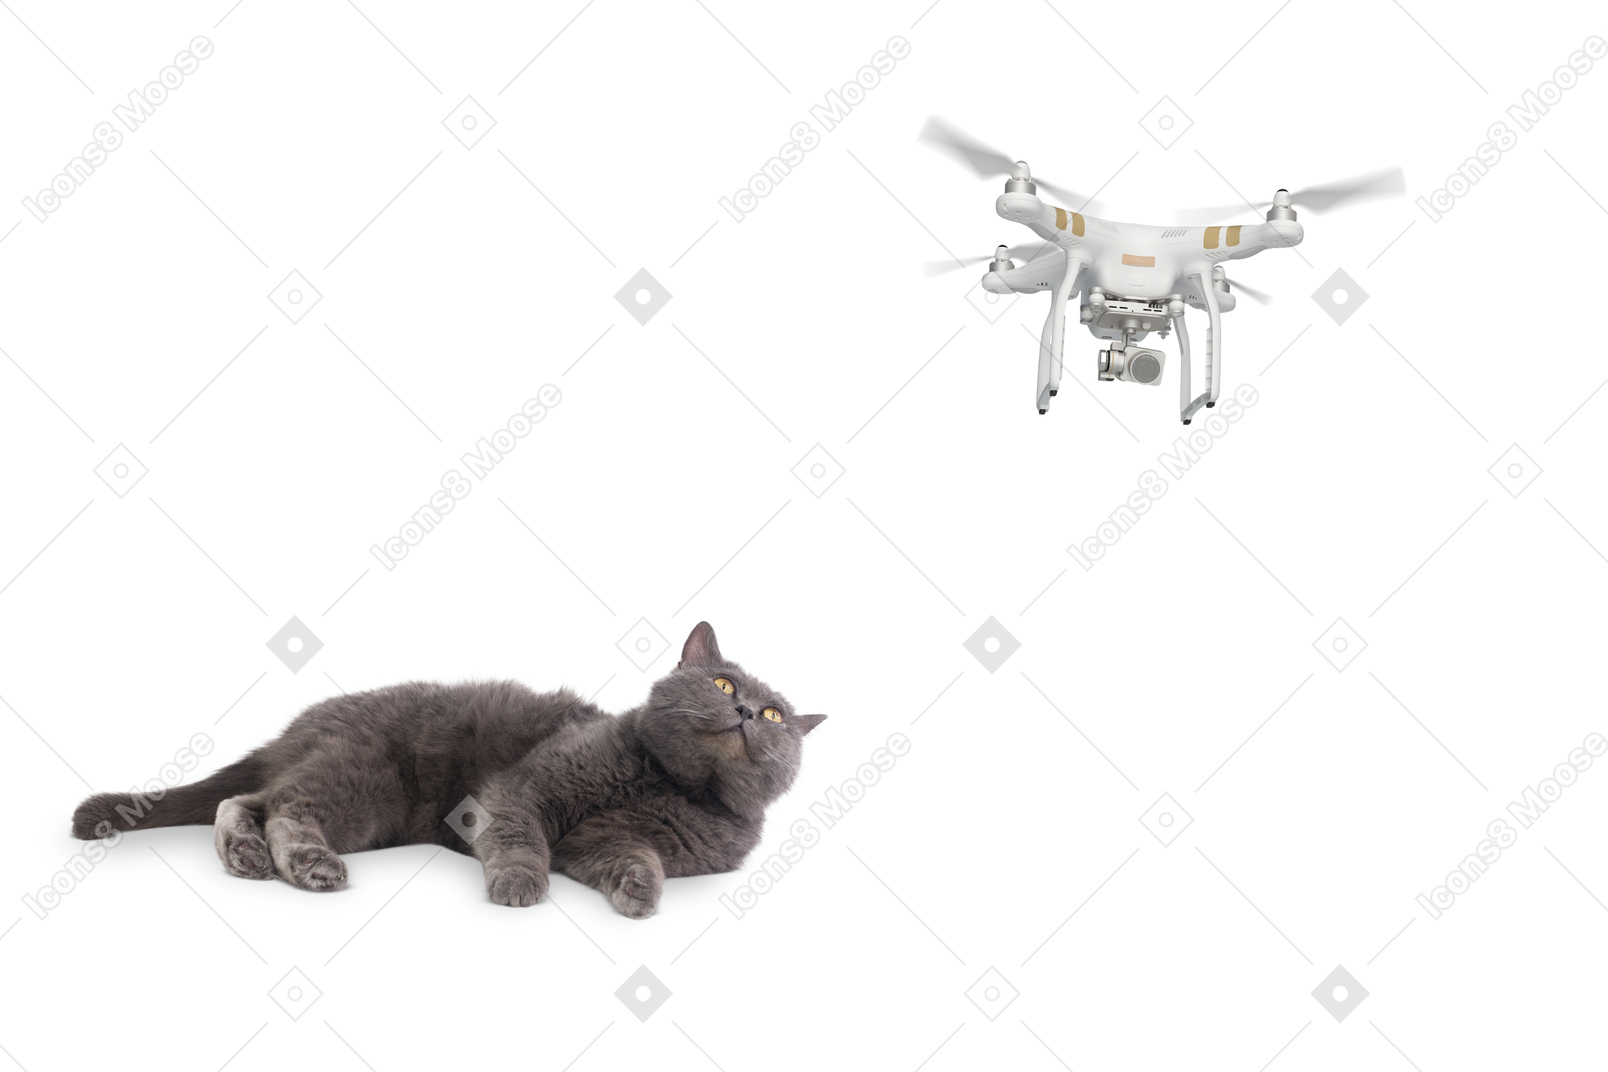 Сварливый кот наблюдает за летающим дроном